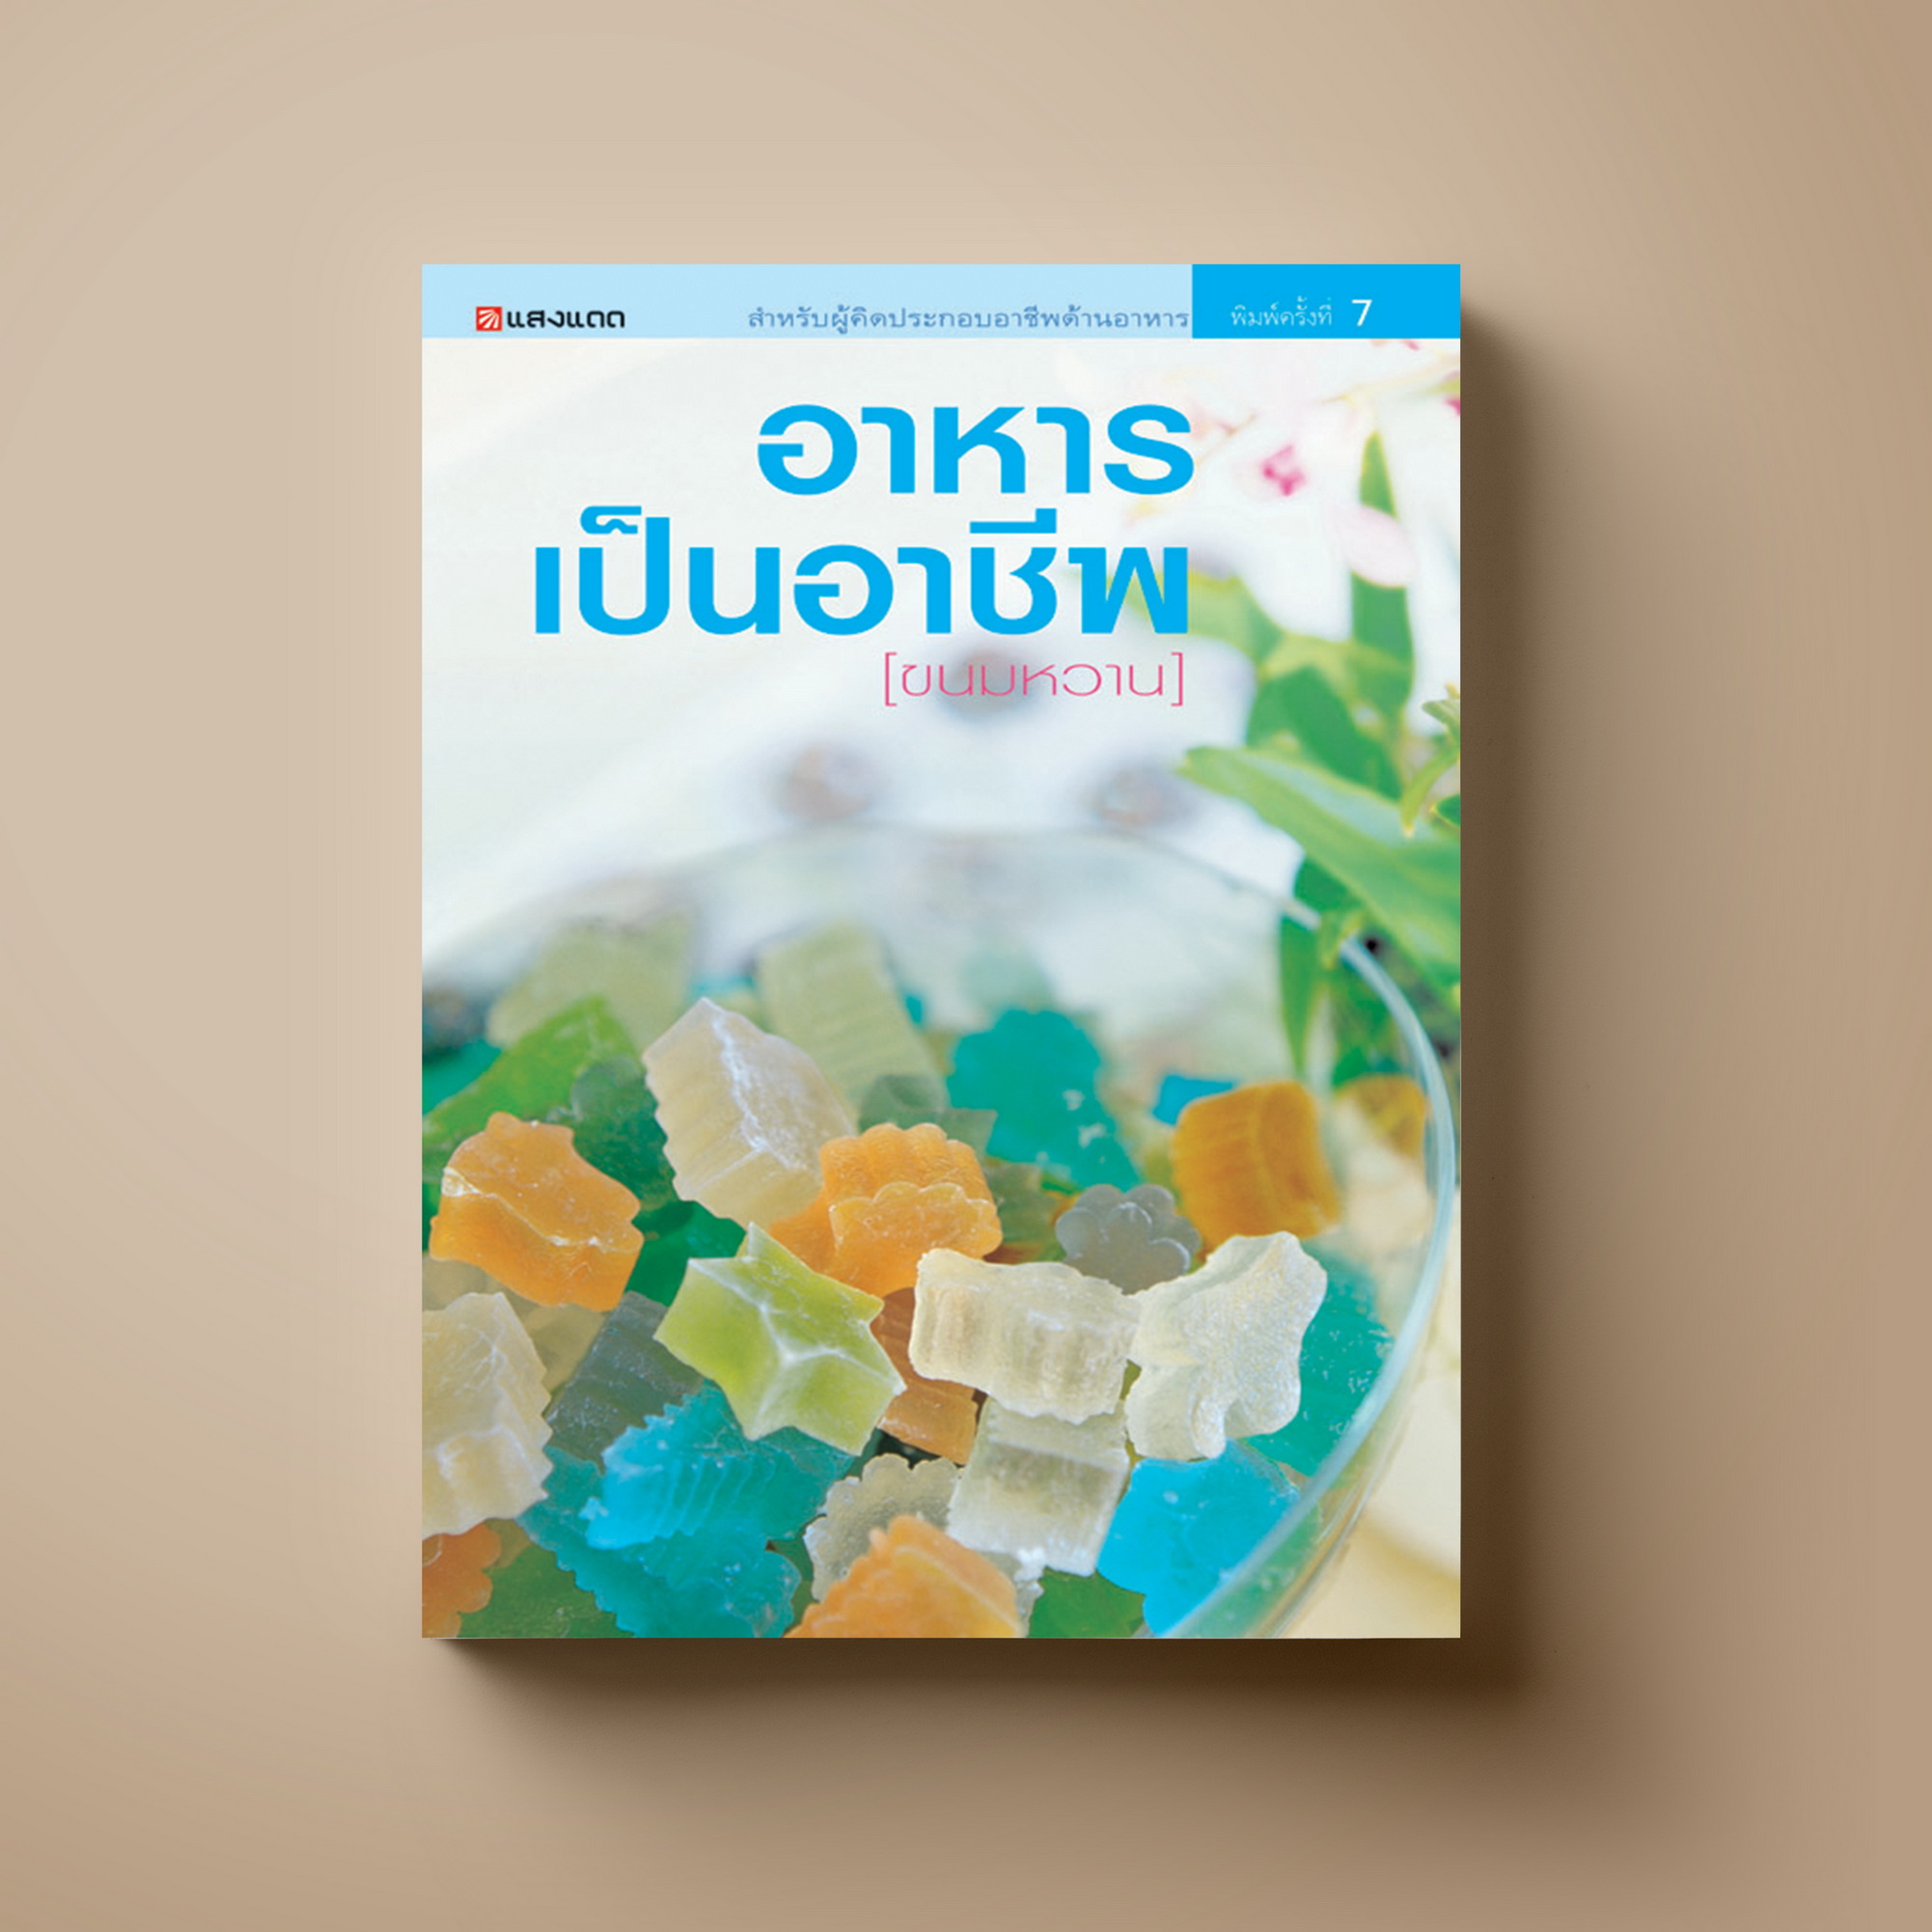 ขนมหวาน (อาหารเป็นอาชีพ) หนังสือตำราขนม Sangdad Book สำนักพิมพ์แสงแดด